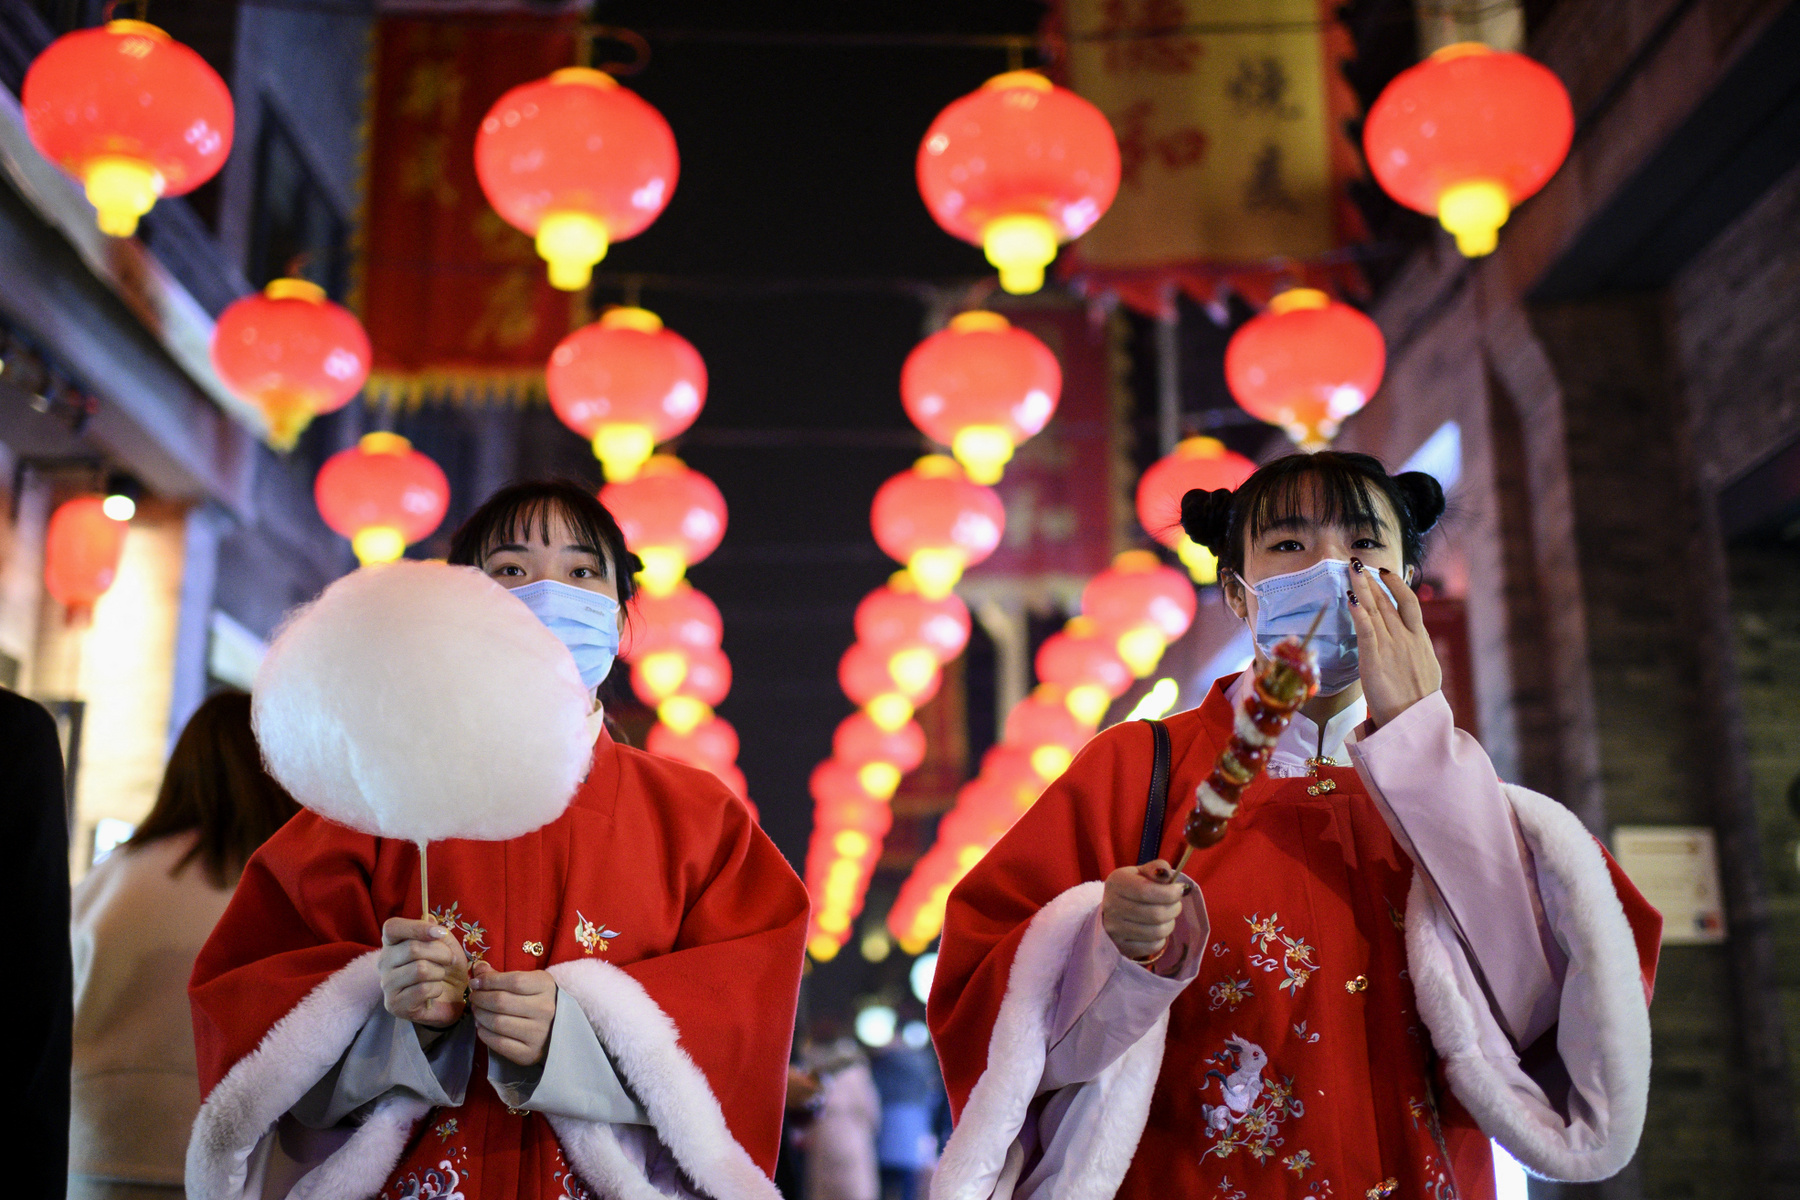 Szelfi után. A közép-kínai Vuhan városában ellenőrzi egy ünneplő fotóját 2021. február 11-én. Innen indult el a koronavírus 2019. decemberében, a következő év márciusában az Egészségügyi Világszervezet, a WHO hivatalosan is világjárványnak minősítette a fertőzést.